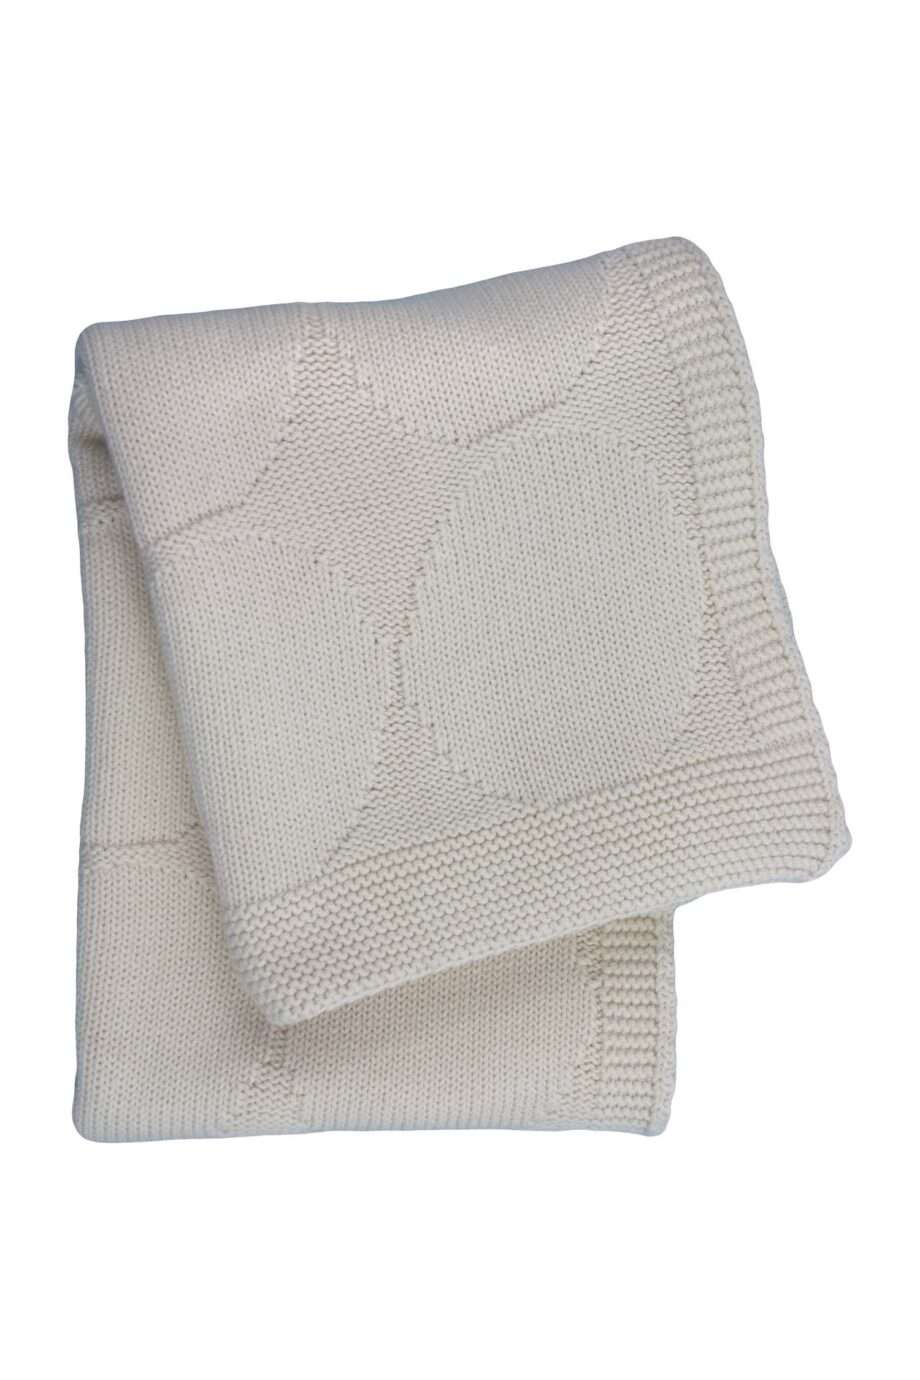 spots ecru knitted cotton little blanket medium